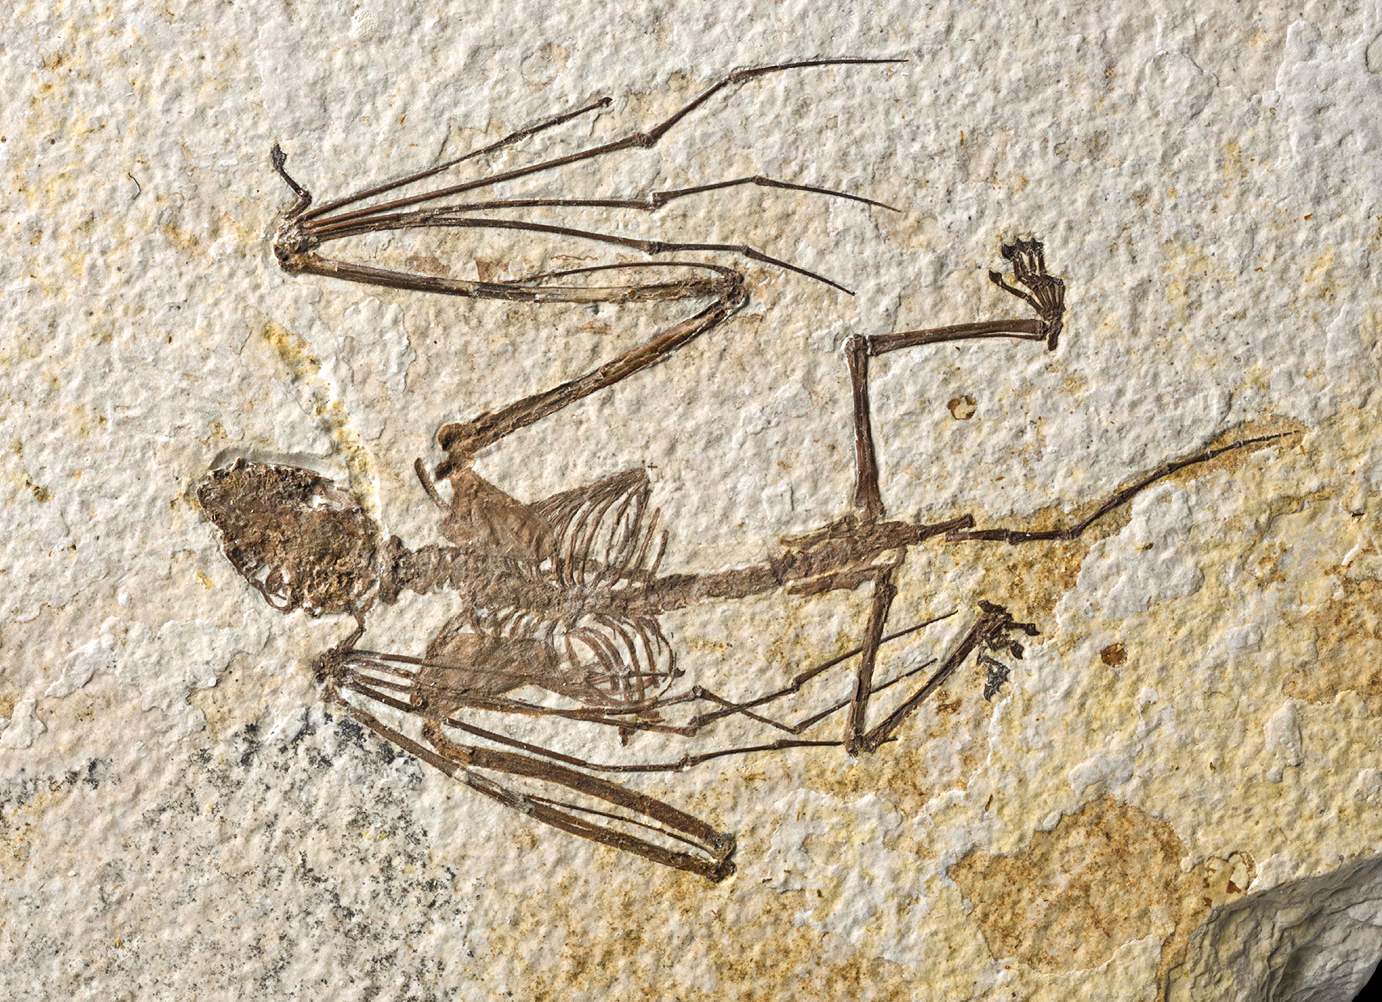 O fotografie a unuia dintre cele două schelete de lilieci nou descrise reprezentând Icaronycteris gunnelli. Acest specimen, holotipul, se află acum în colecțiile de cercetare ale Muzeului American de Istorie Naturală.